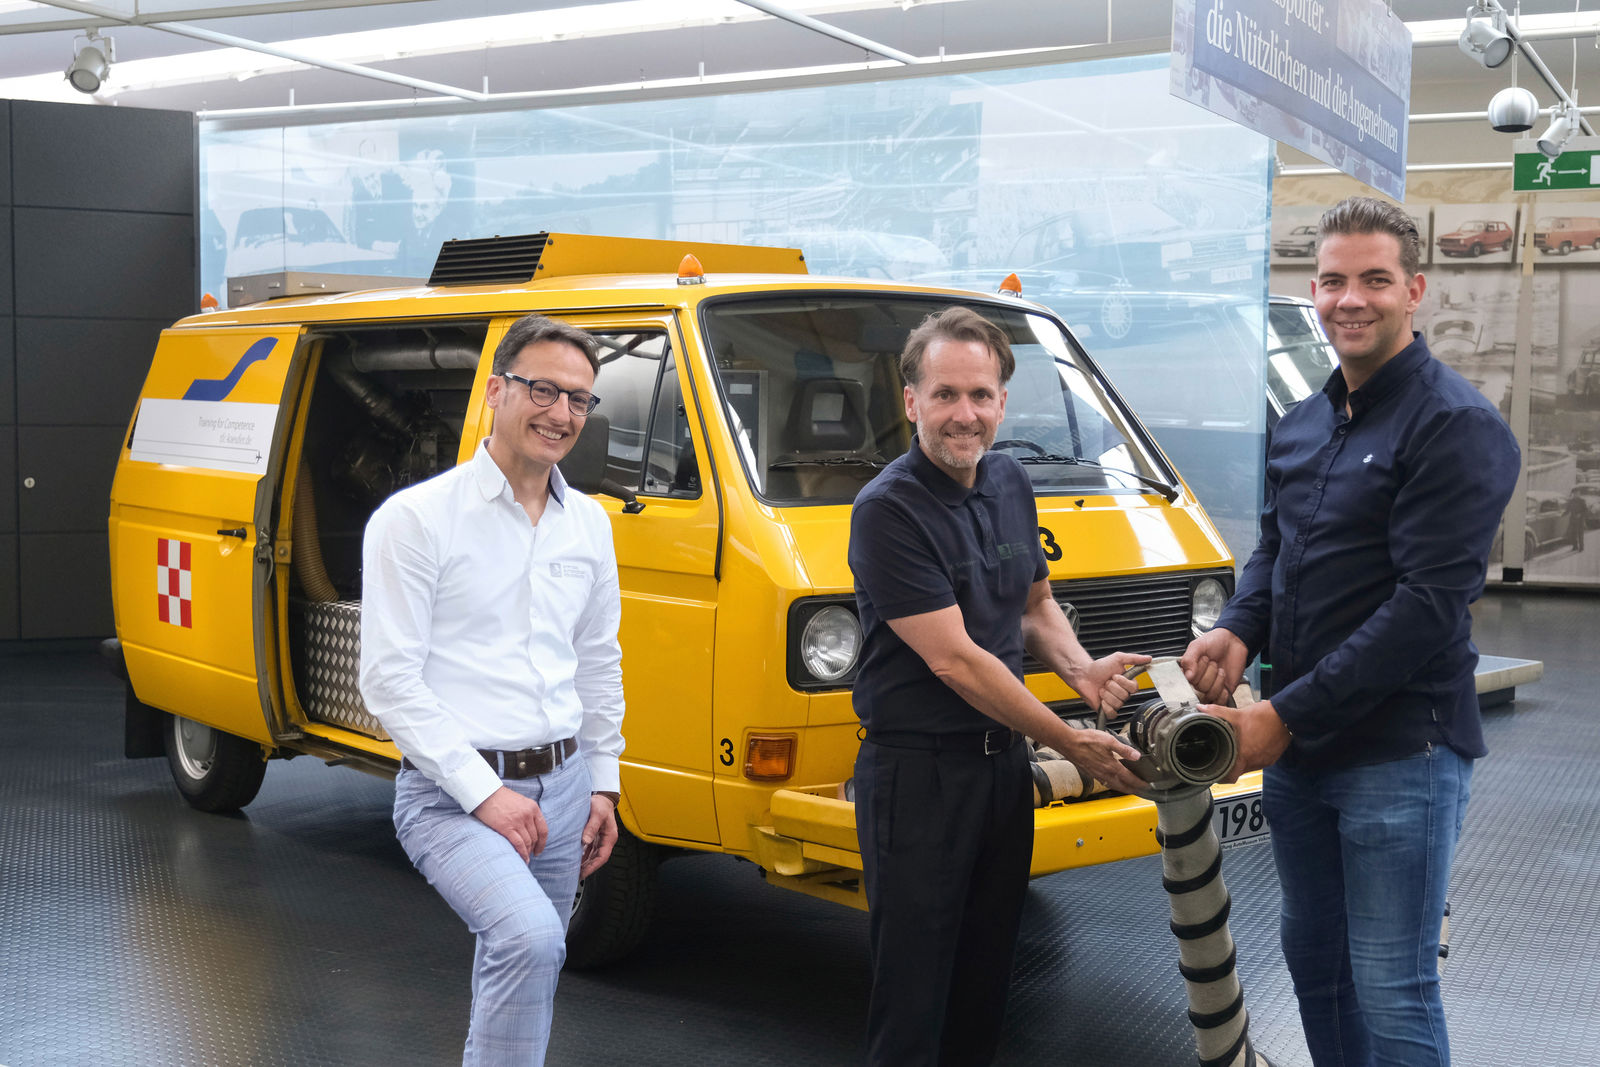 Neuzugang im AutoMuseum Volkswagen: T3 Air Starter